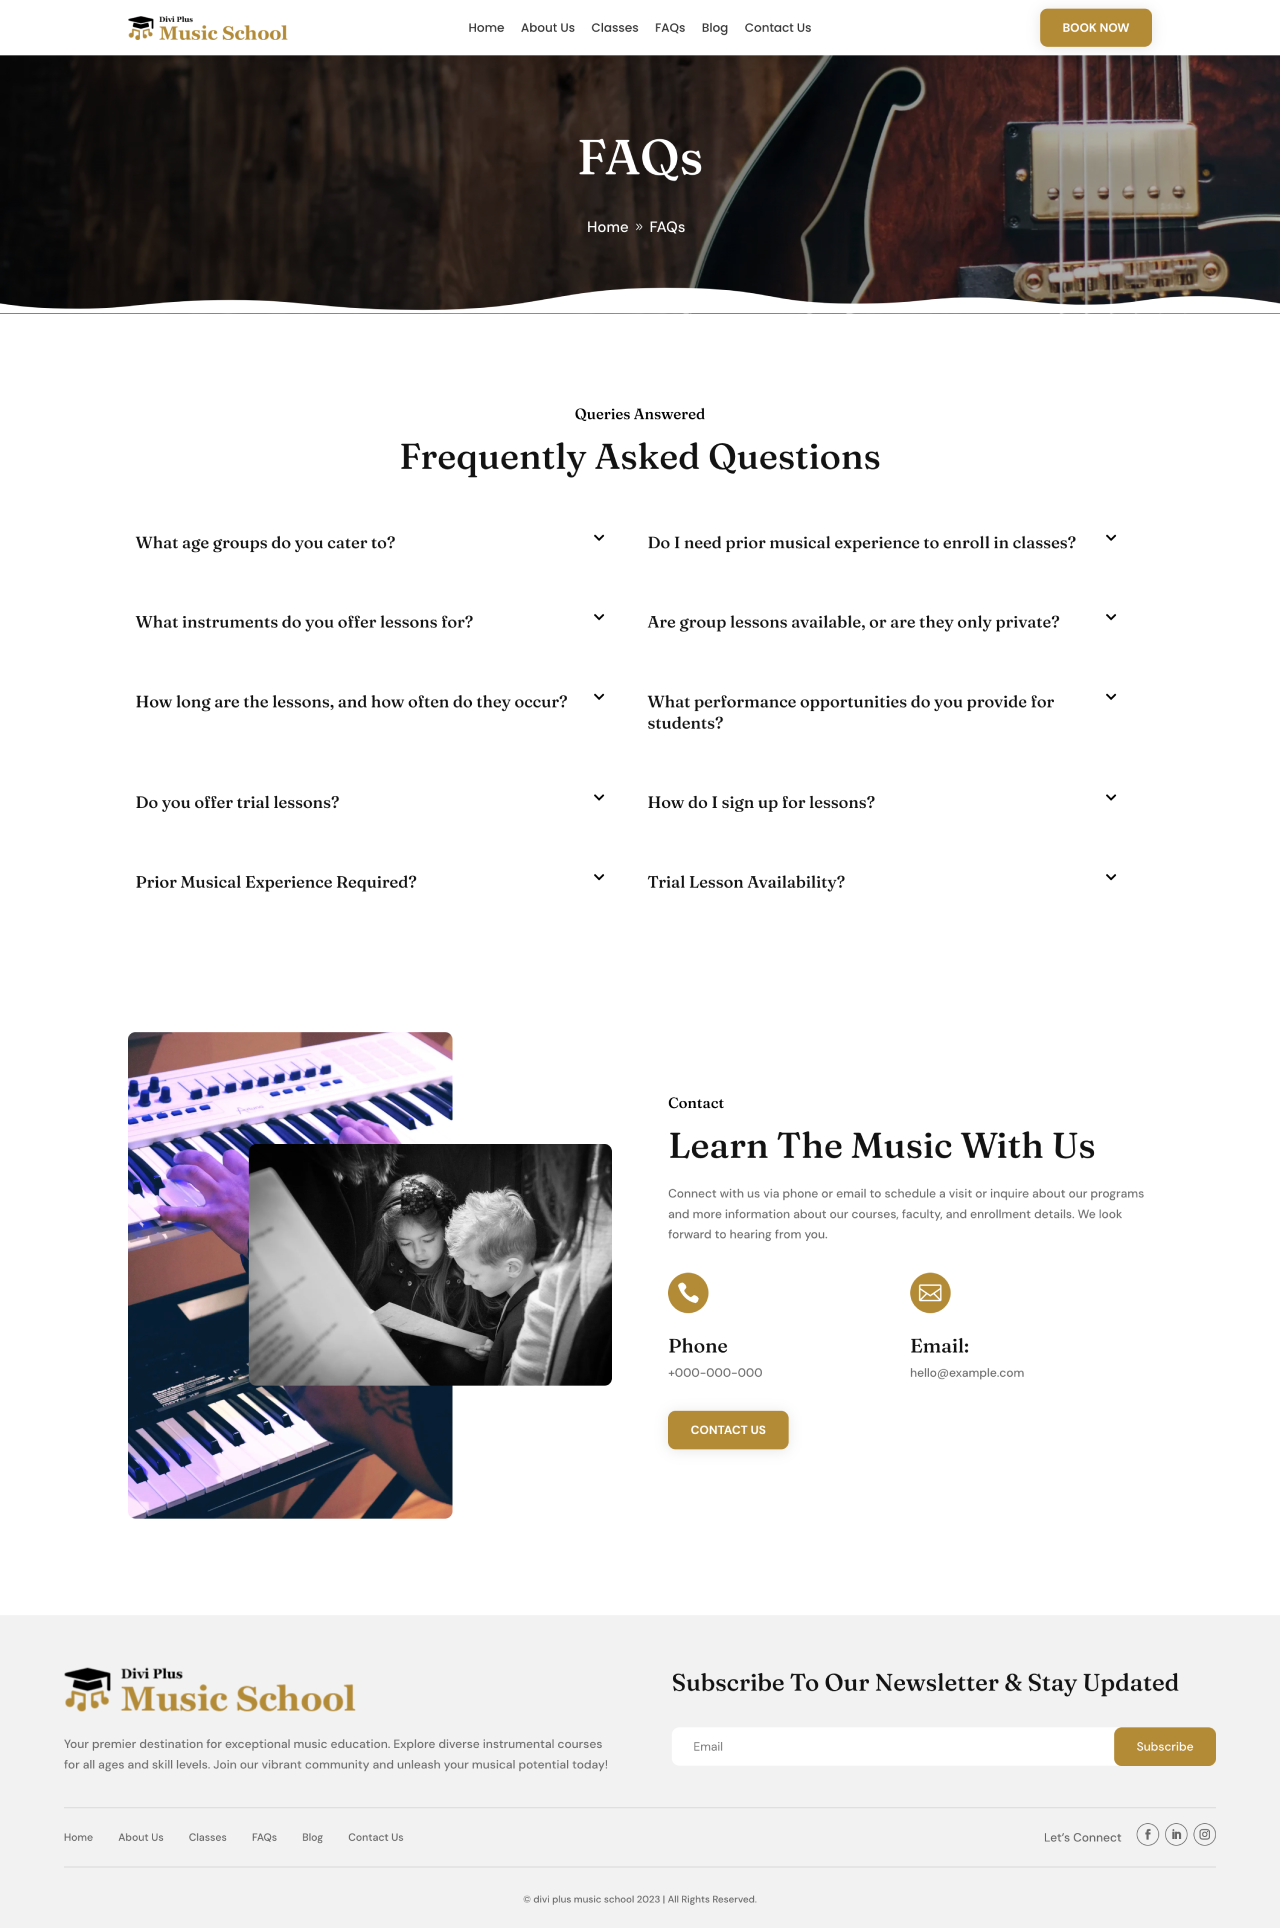 Divi Plus Music School Child Theme FAQ's